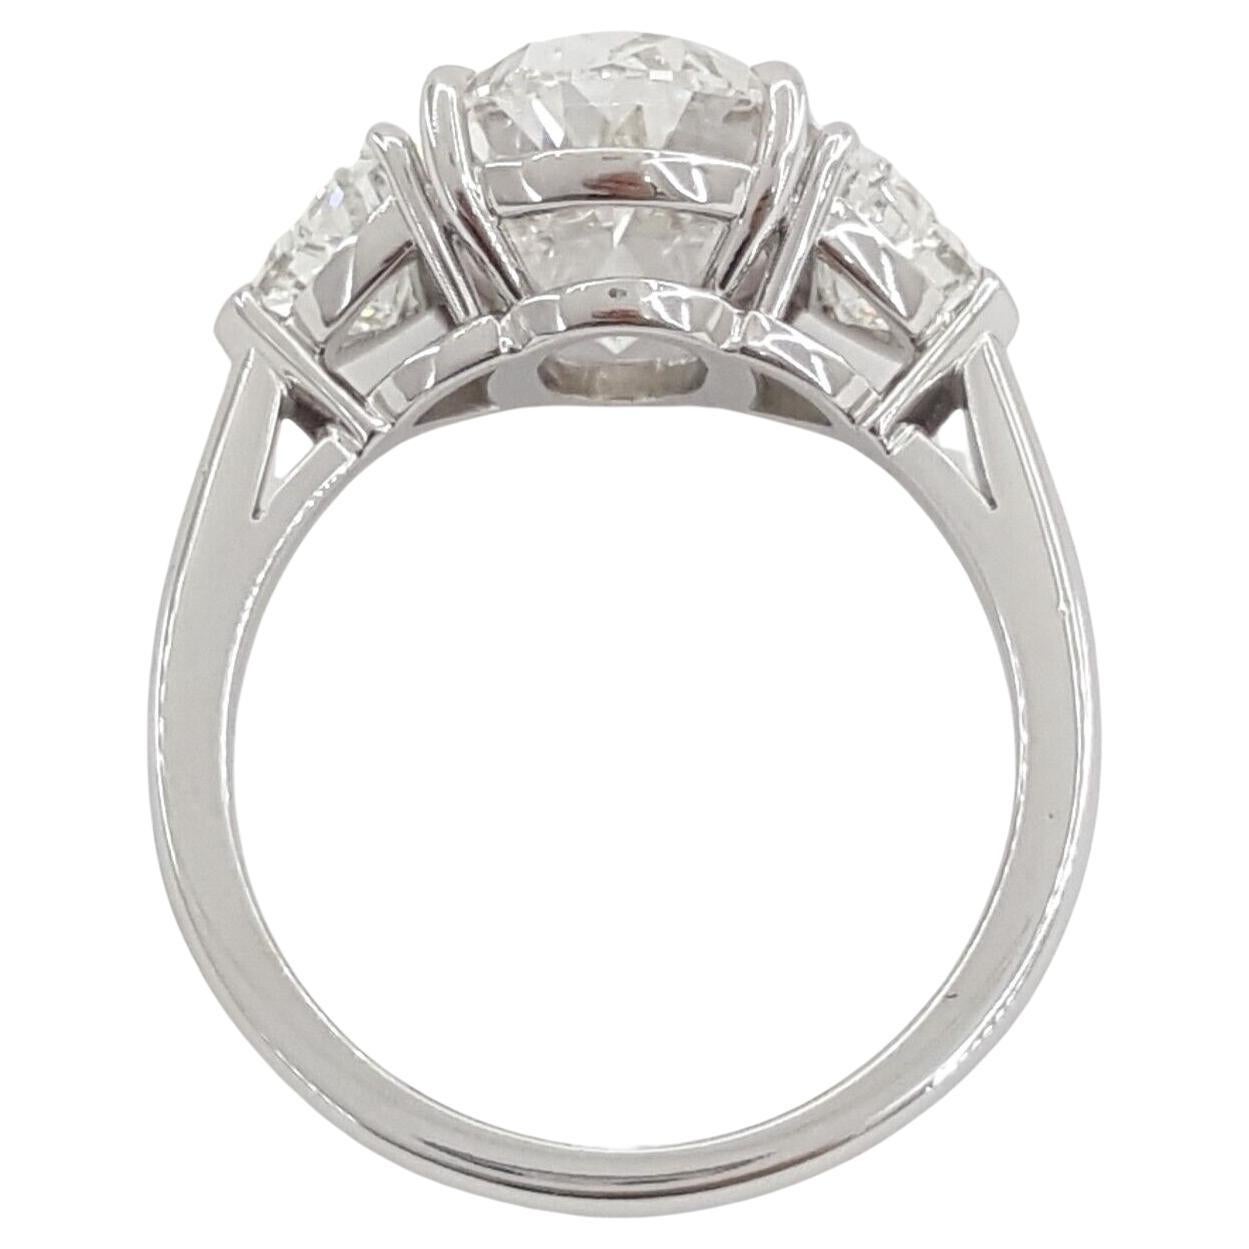  Diamant ovale de 6 carats certifié GIA, témoin d'une beauté intemporelle et d'un savoir-faire inégalé. Sertie en platine massif, cette bague extraordinaire est un symbole de luxe et de raffinement.

Émanant d'un rayonnement pur, ce diamant arbore